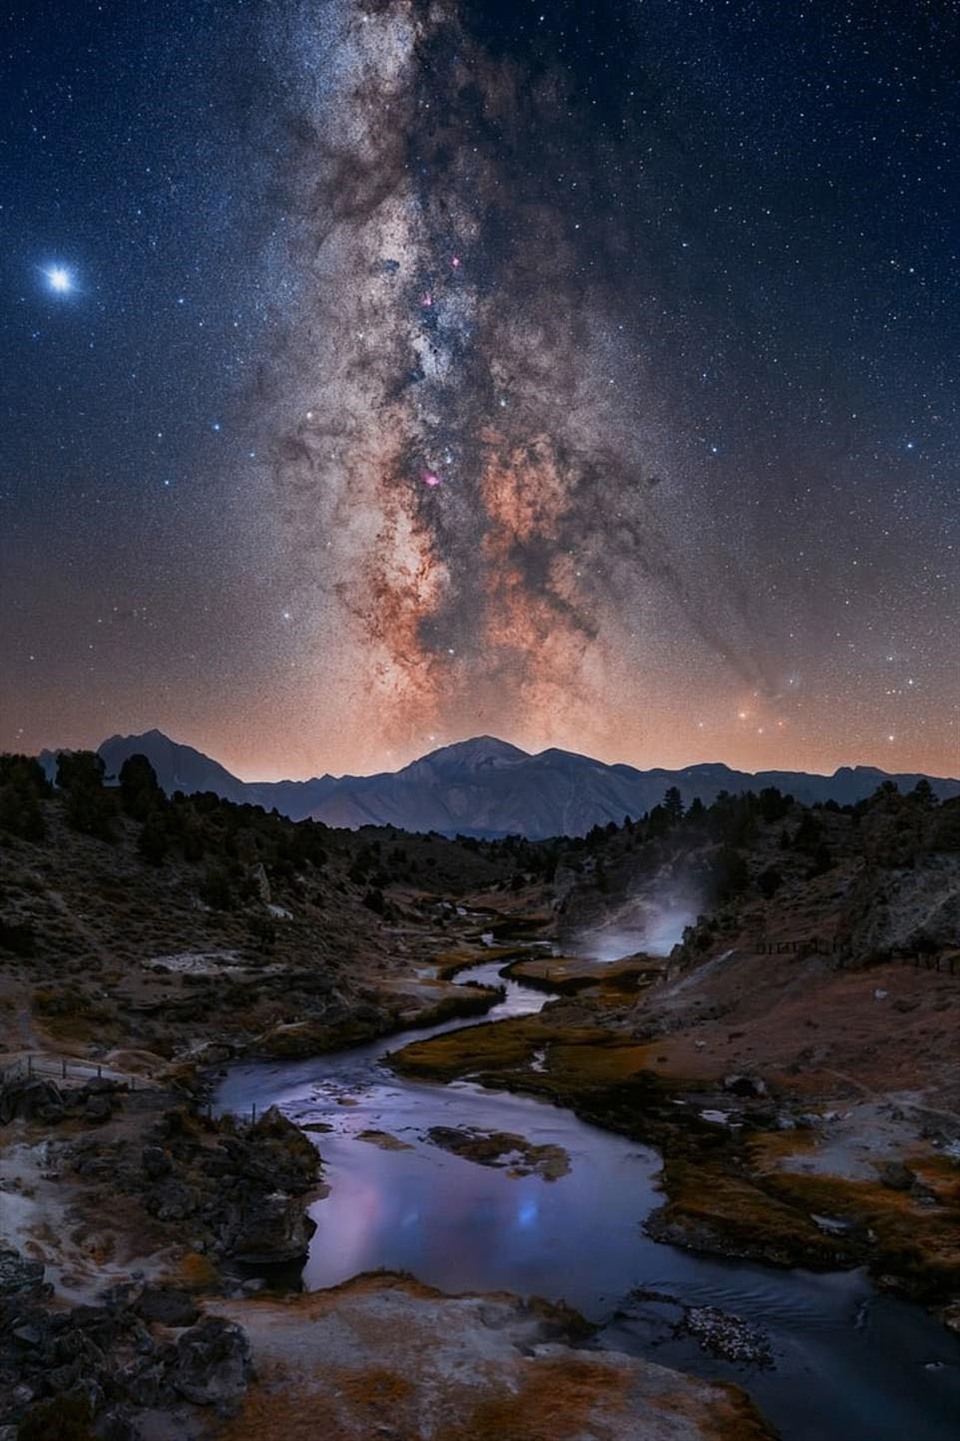 Hình ảnh mới từ dải ngân hà bao gồm 1 tỷ ngôi sao - KhoaHoc.tv